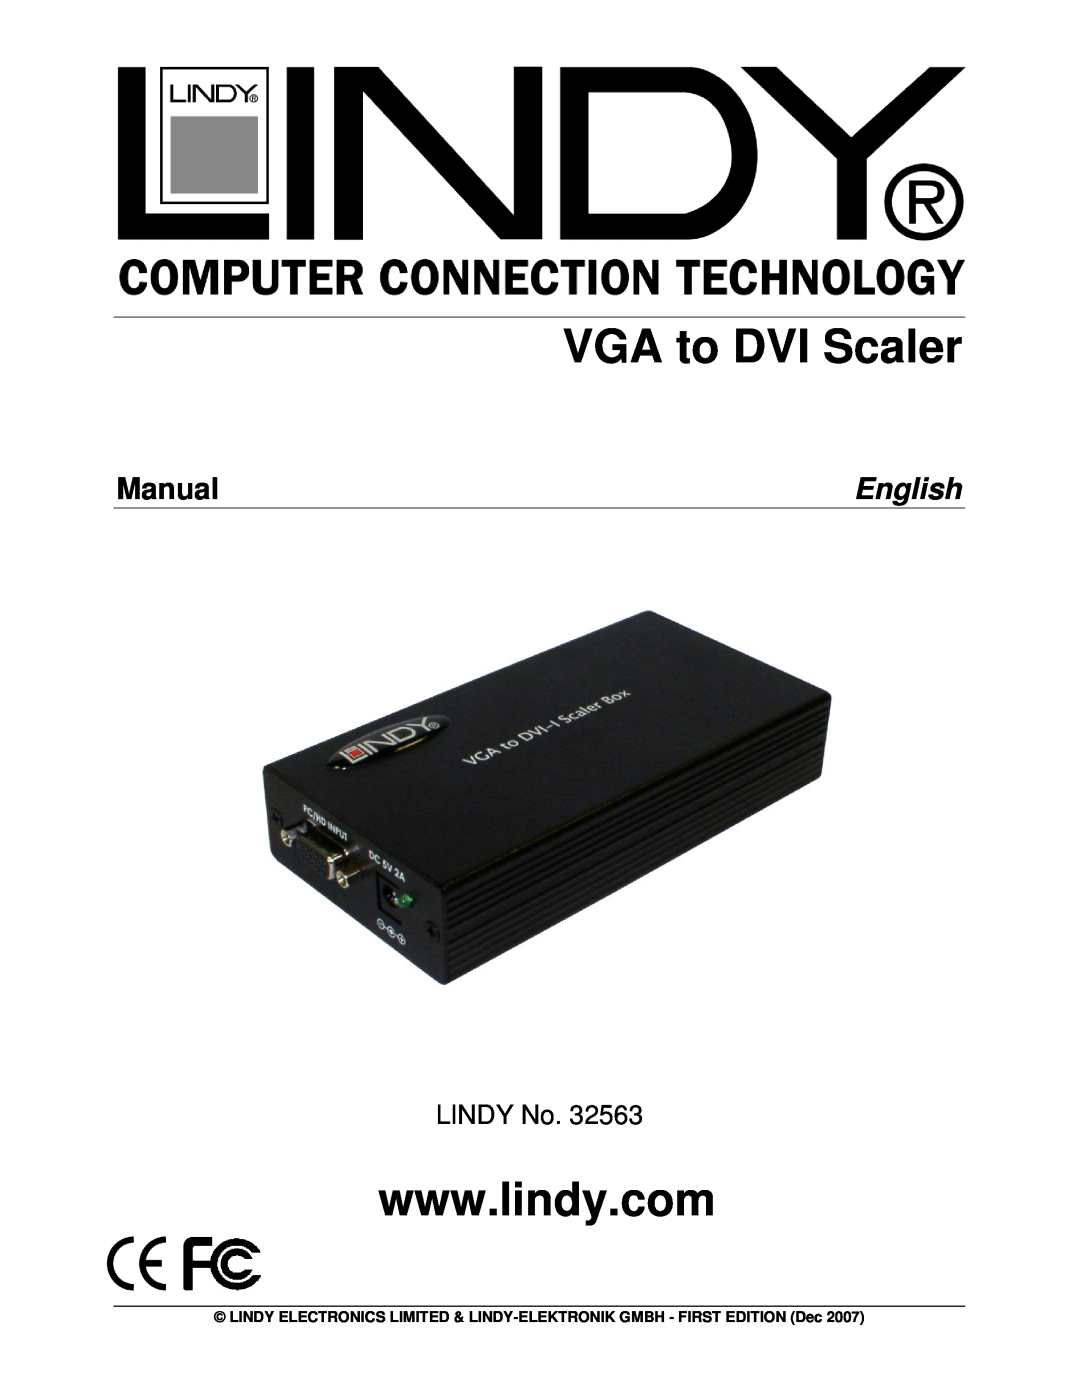 Lindy 32563 manual VGA to DVI Scaler, Manual, English, LINDY No 